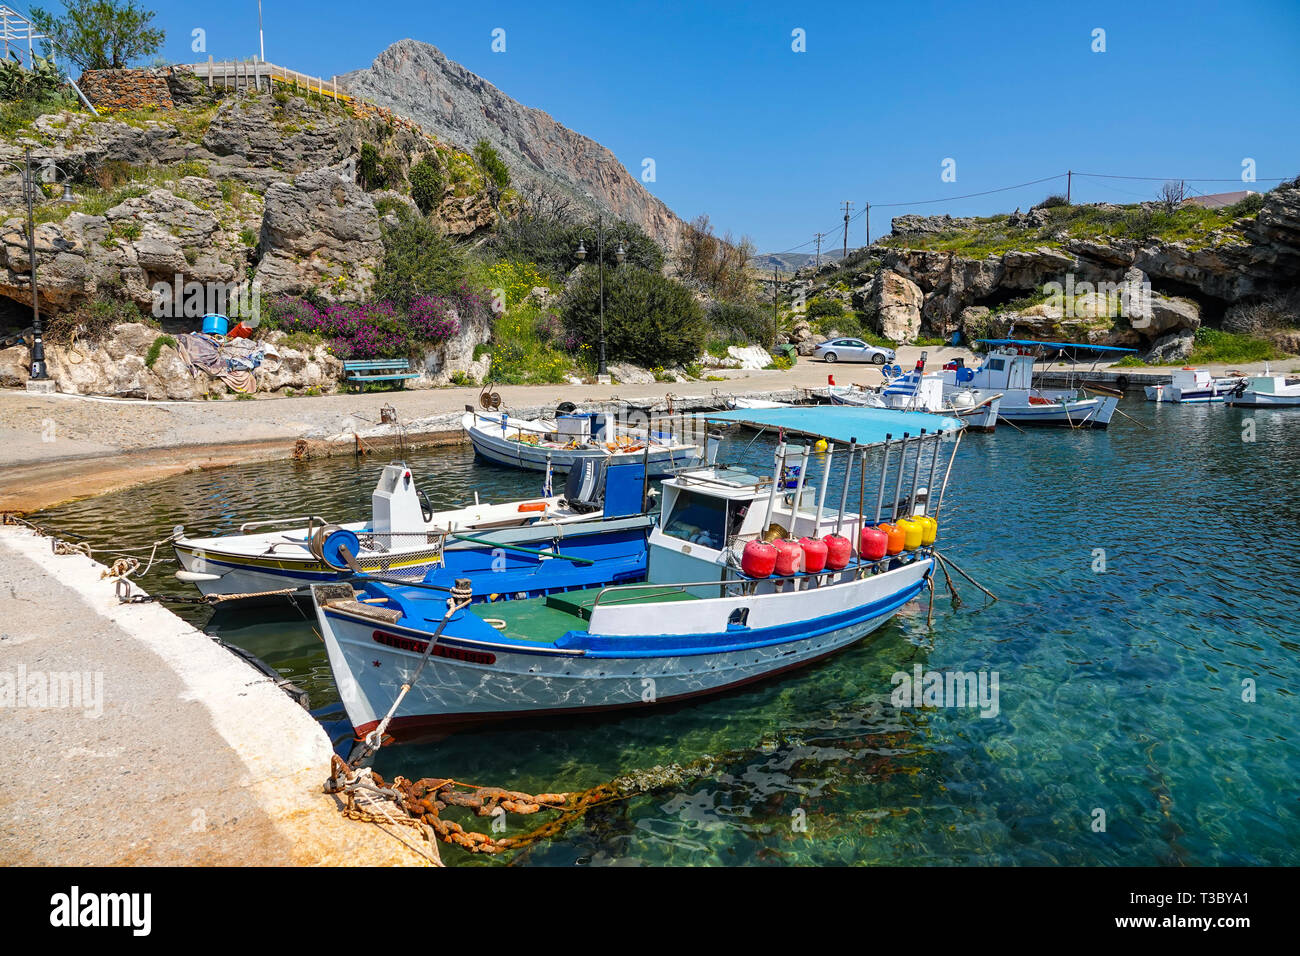 Petit port et bateaux de pêche au village de Profitis Ilias, près de Neapoli Voion, printemps, printemps, Peleponnese, grèce, grec Banque D'Images